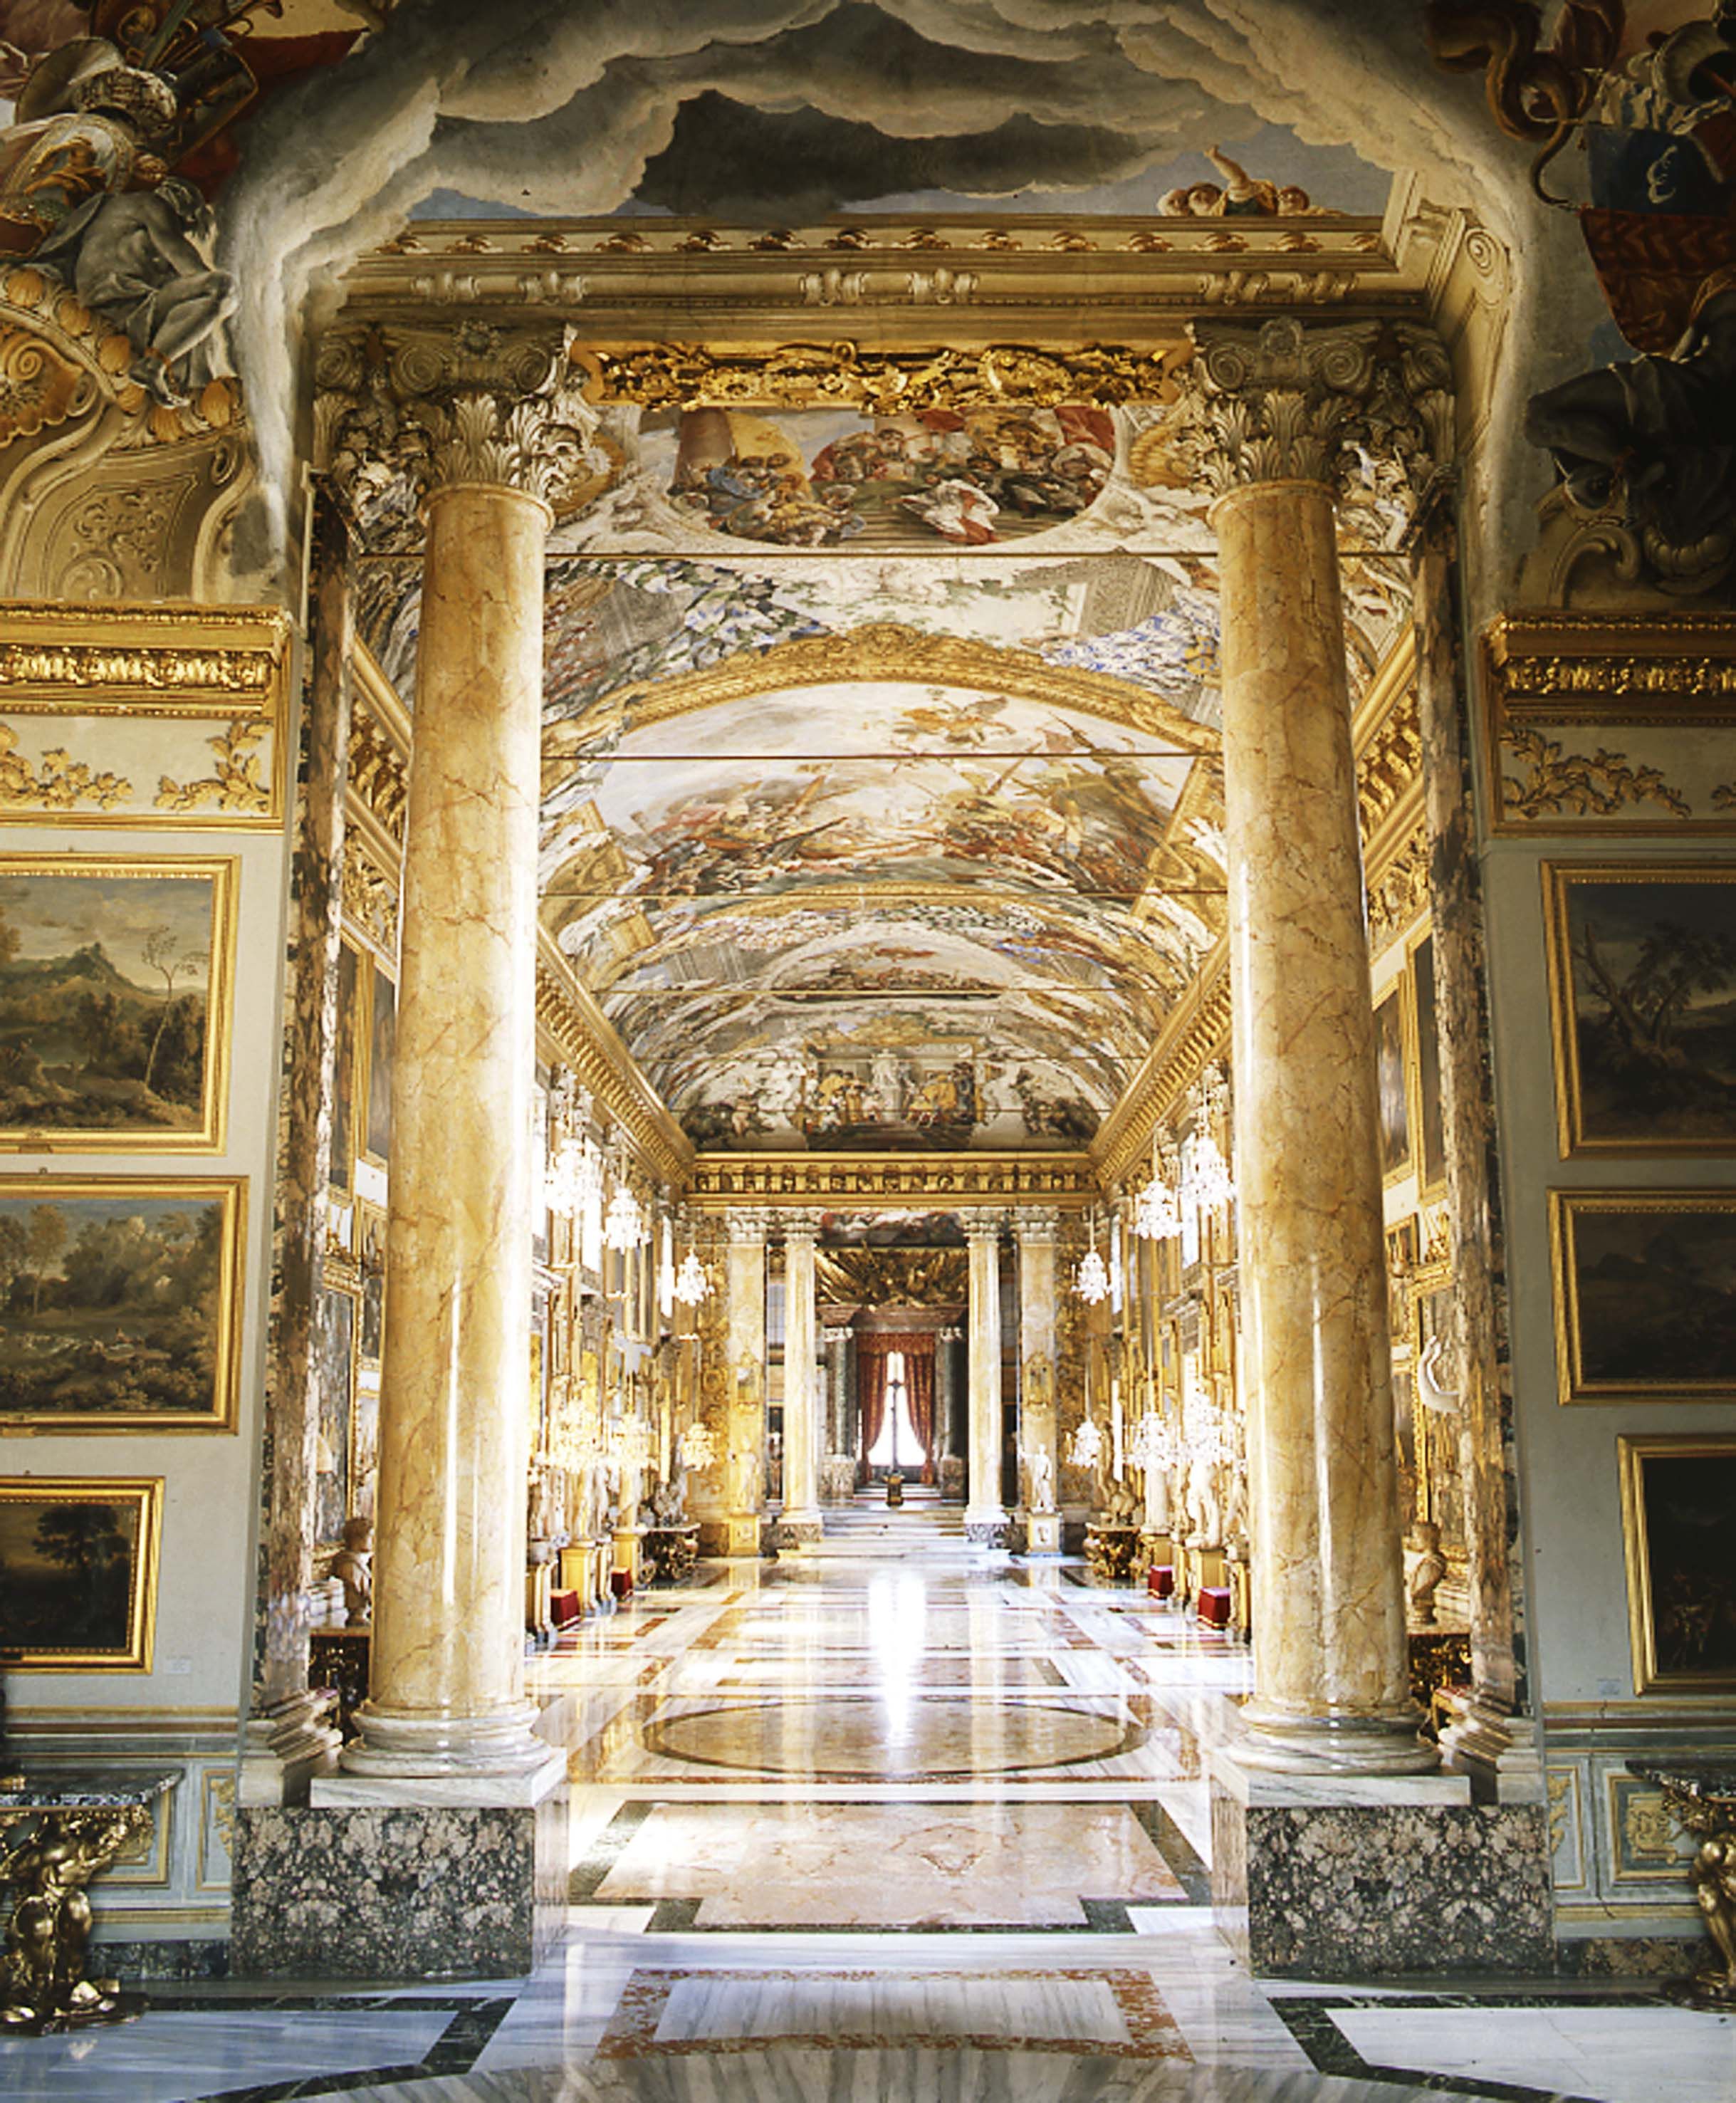 Colonna Gallery, Palazzo Colonna, Rome